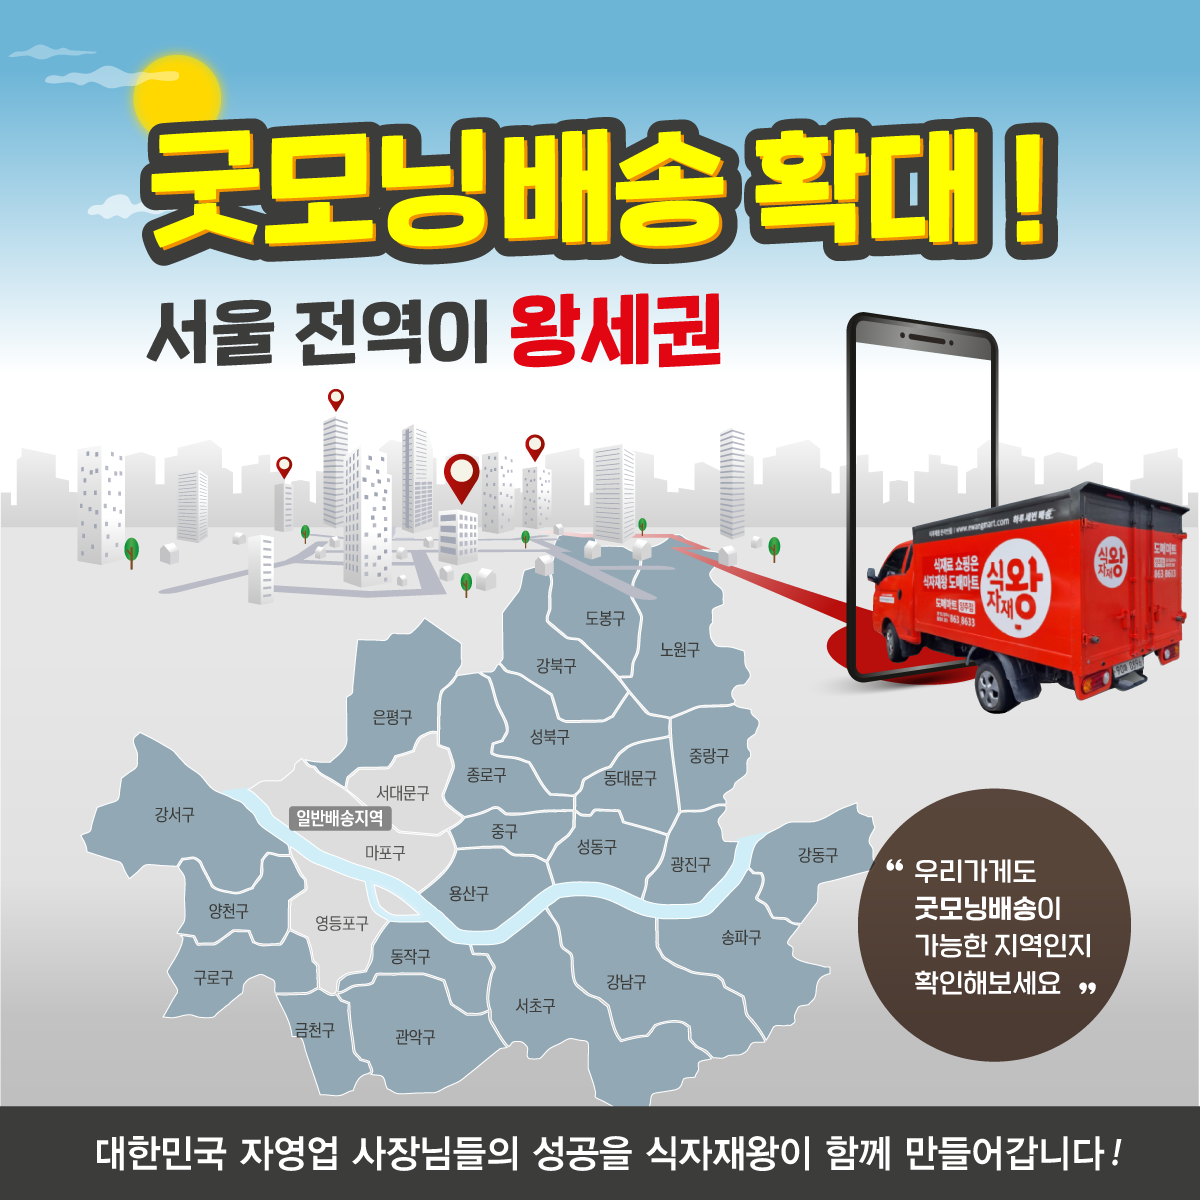 [식자재왕 온라인몰] 식자재왕, ‘굿모닝배송’ 늘리며 서울 전역으로 배송 서비스 확대